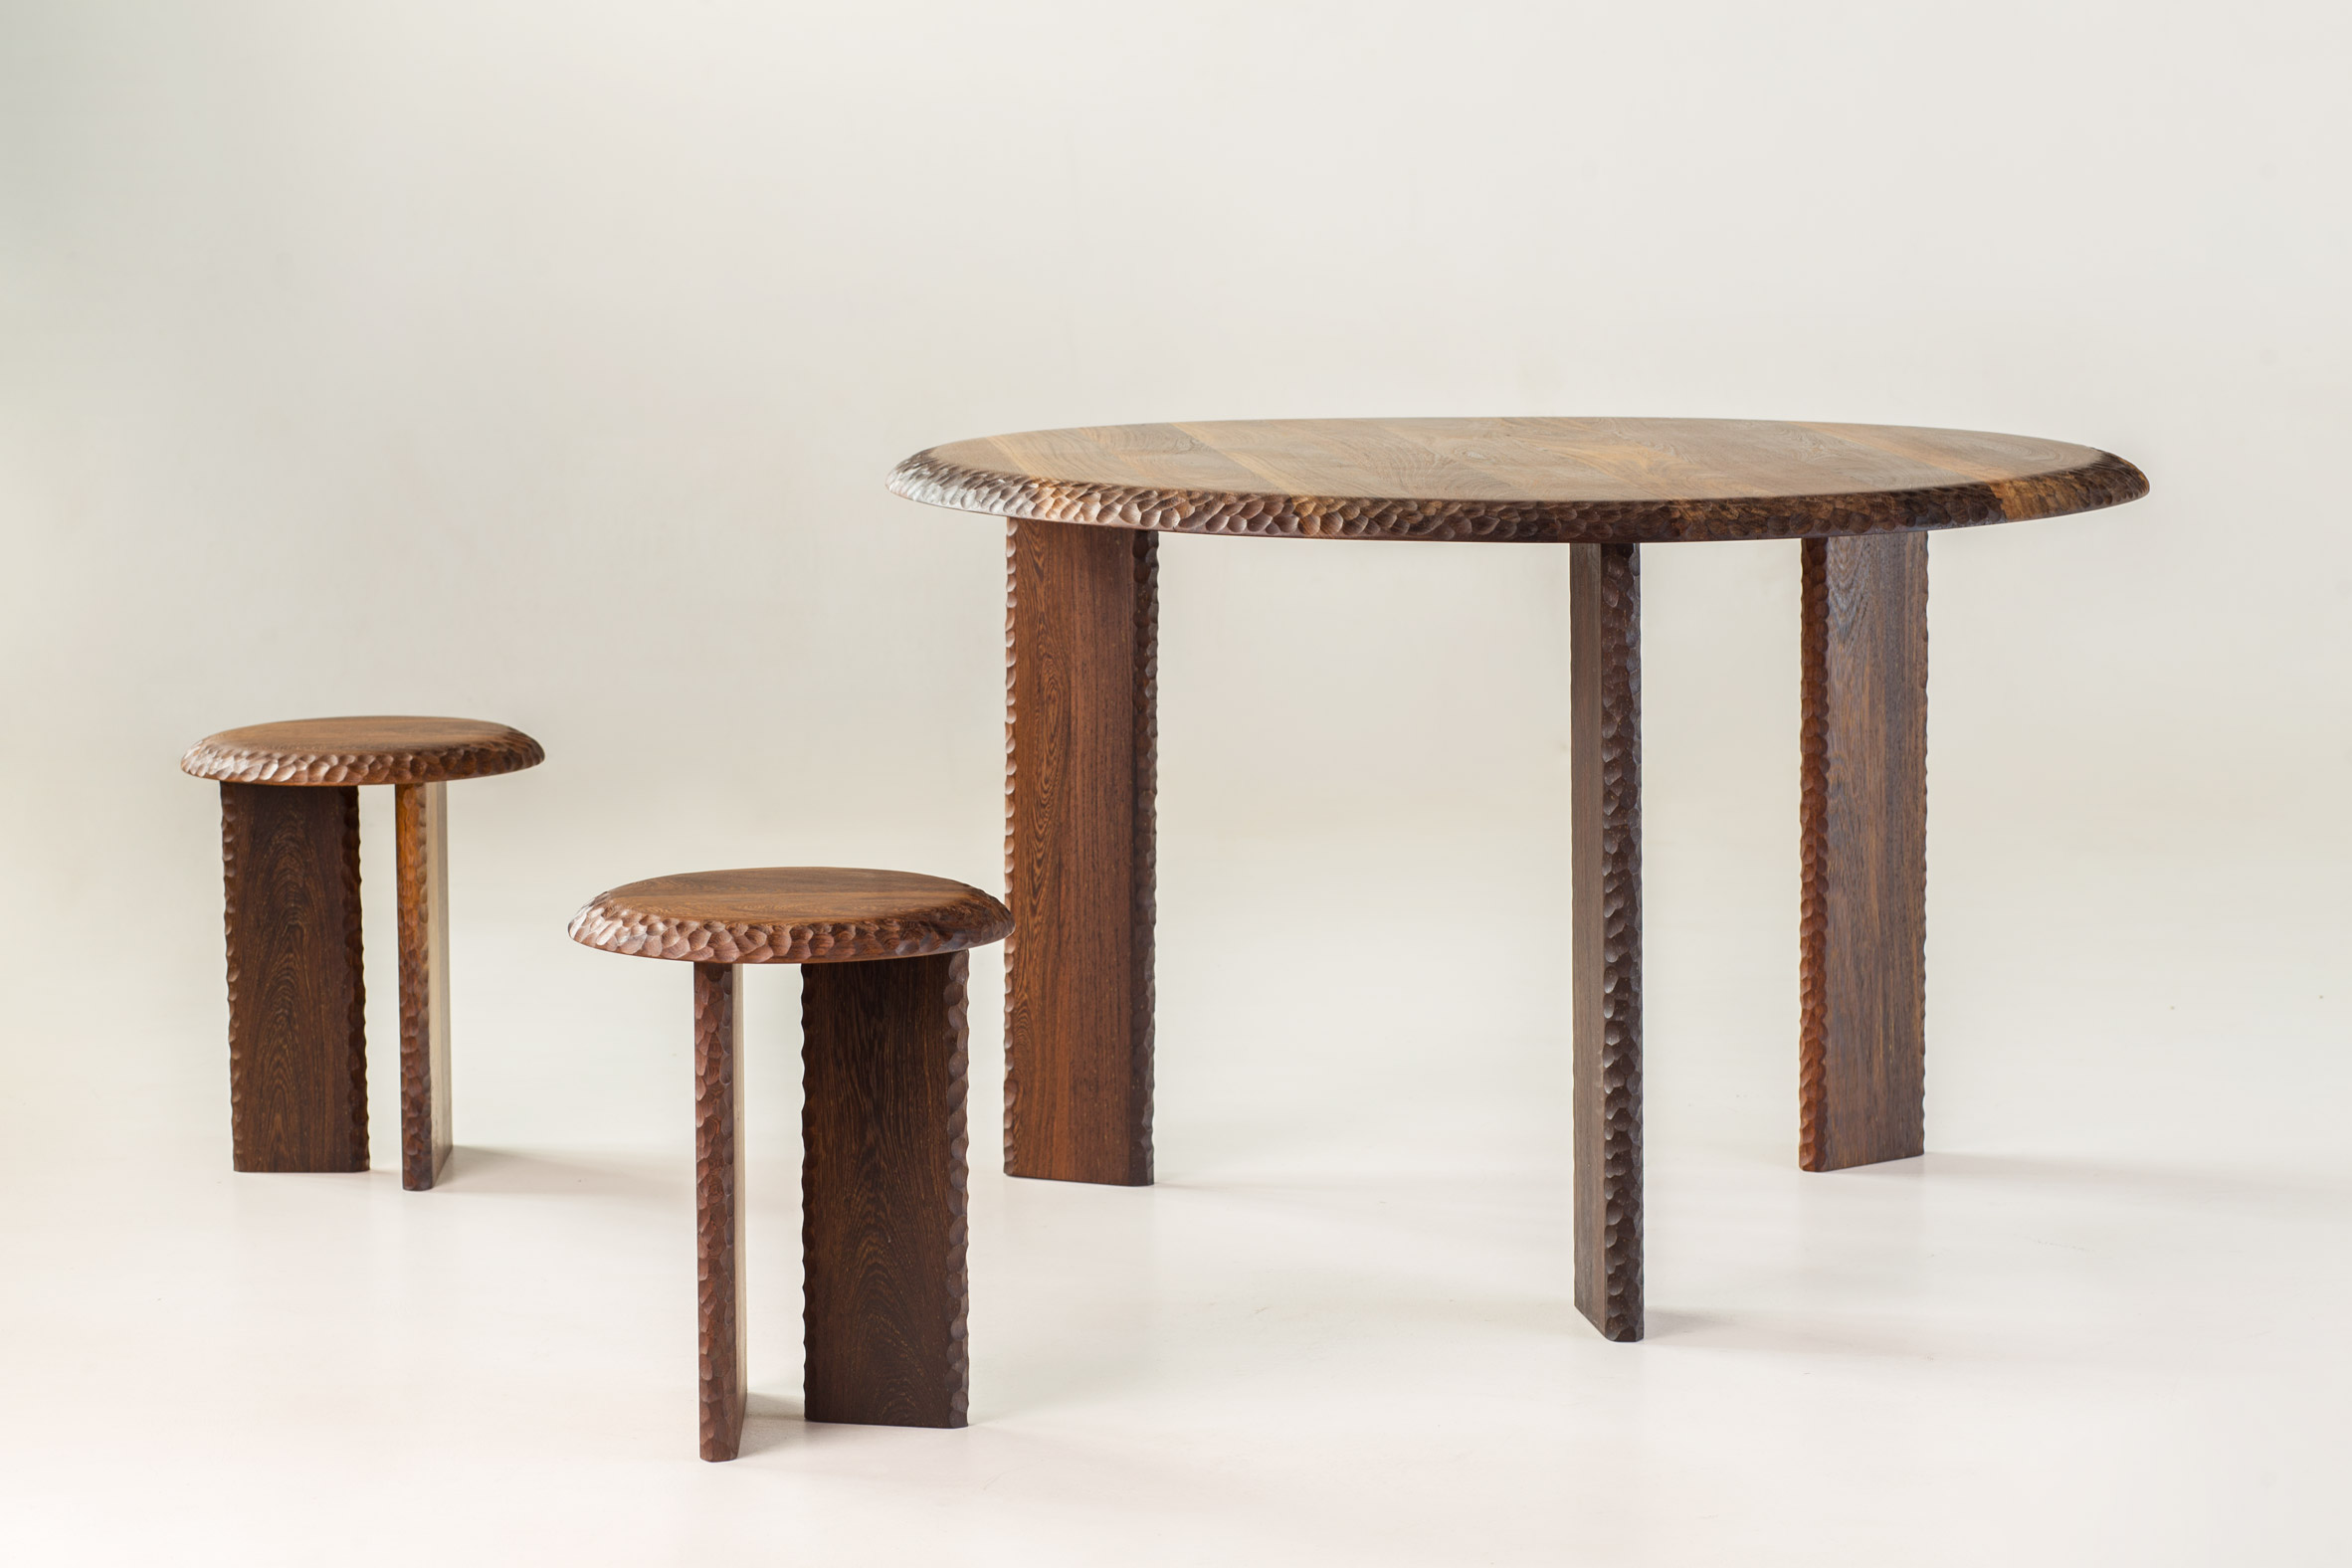 Mabeo furniture at Milan design week